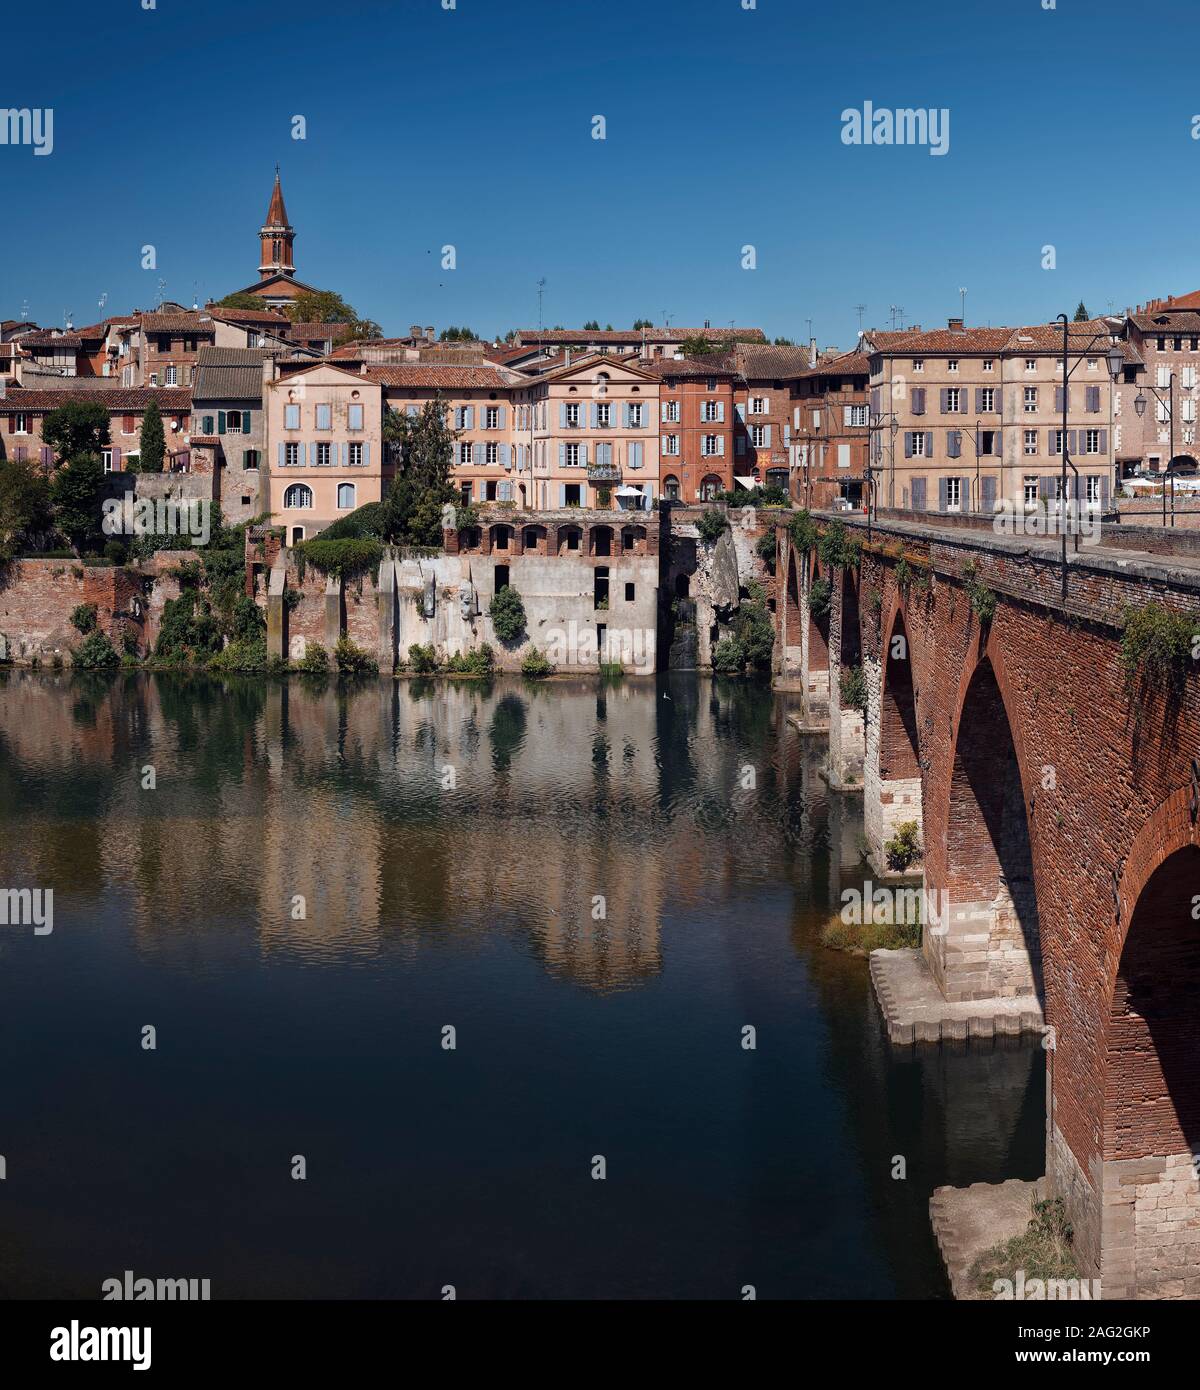 La ciudad de Albi, en el sur de Francia, la arquitectura de la ciudad histórica con el viejo puente Pont Vieux sobre el río Tarn. Foto de stock